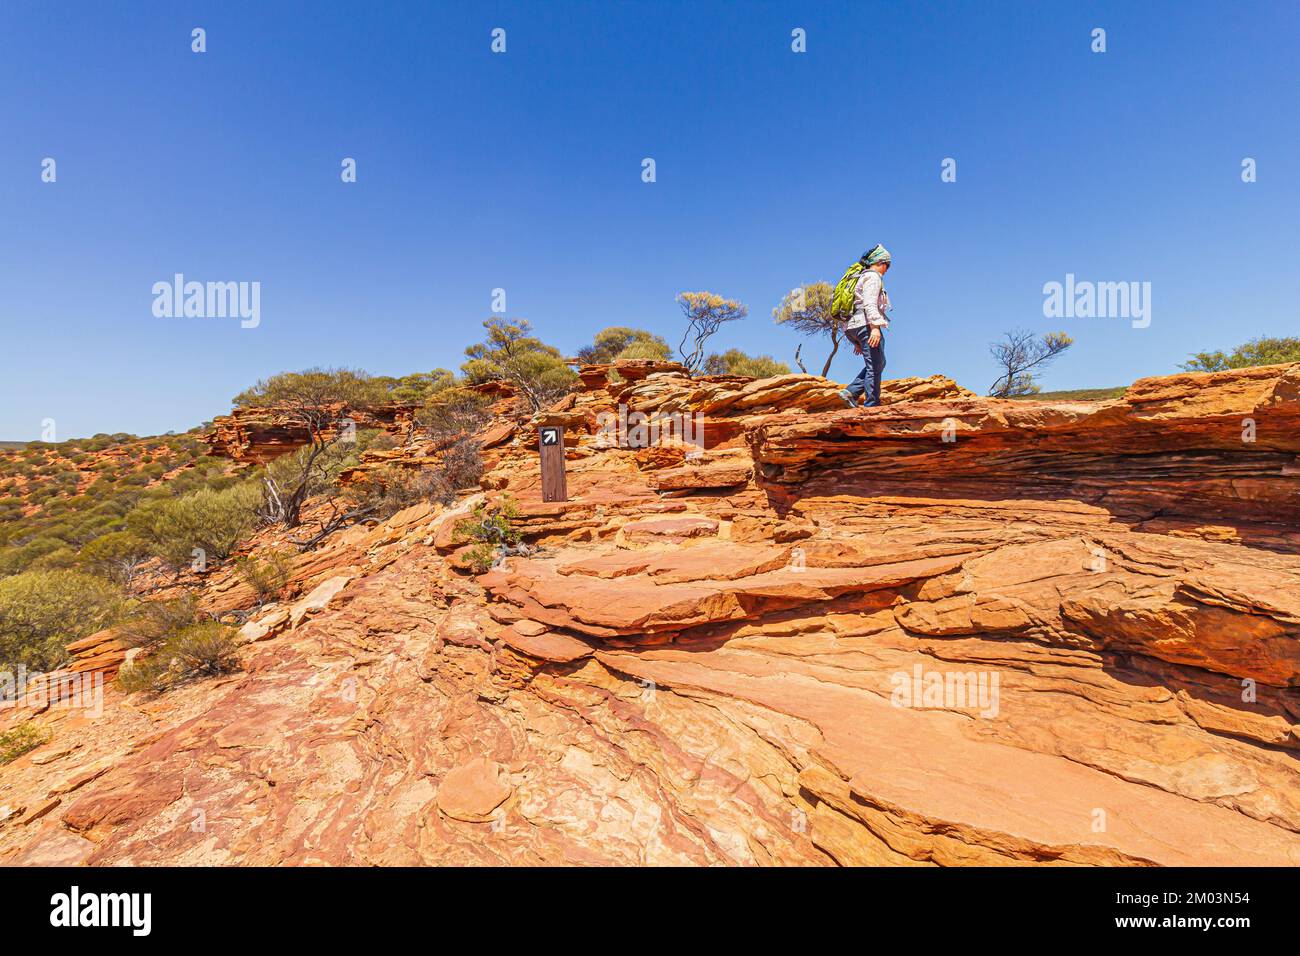 Einsame Wanderer auf der Sandsteinoberfläche des Nature Window Trail im Kalologi-Nationalpark, Australien. Stockfoto